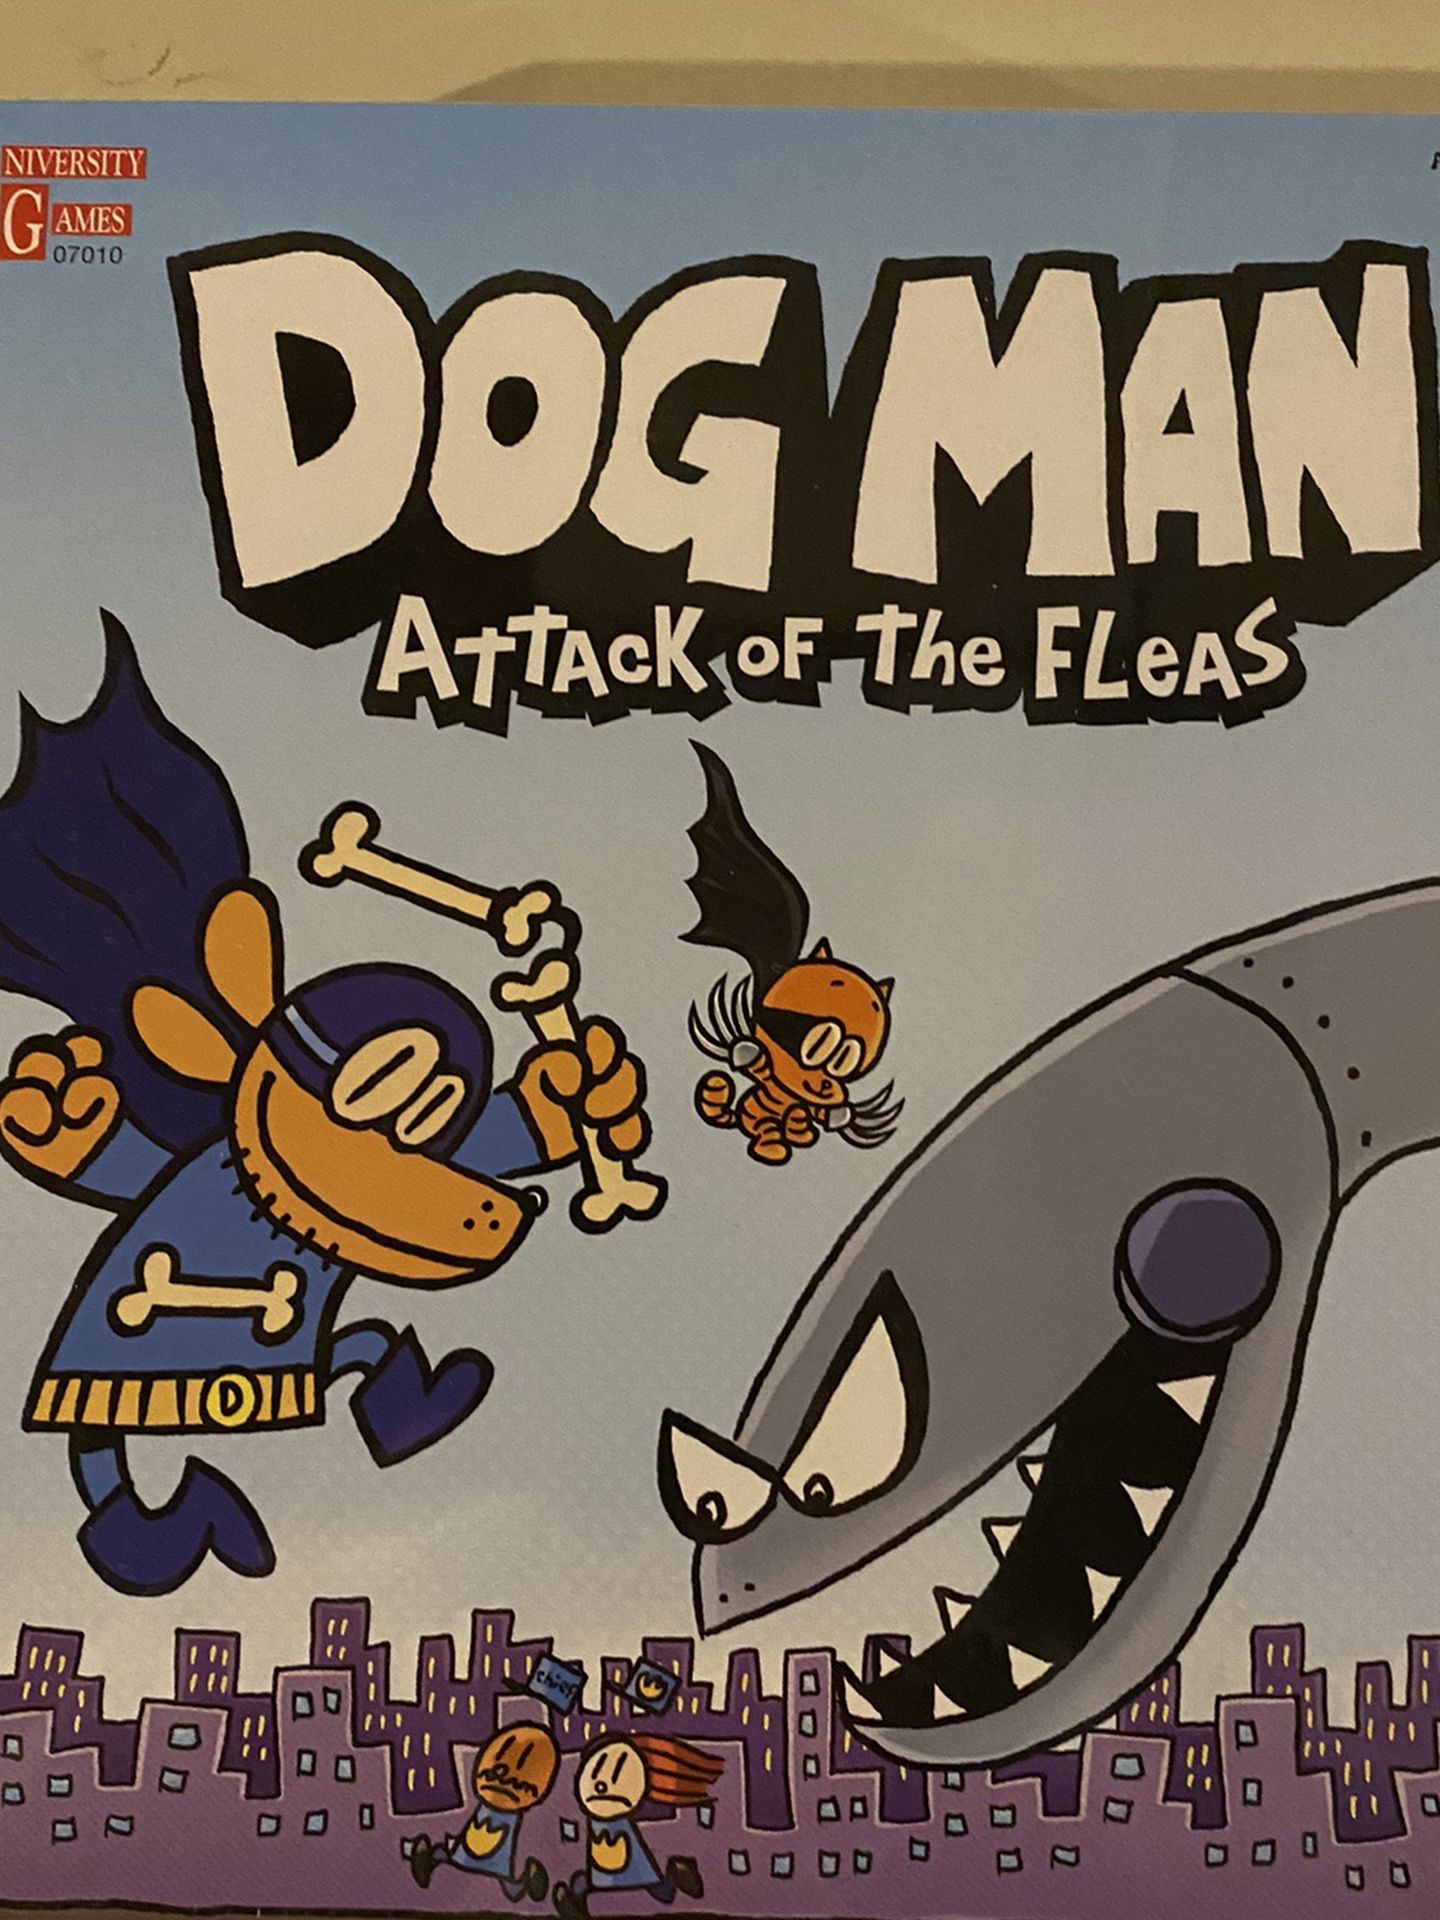 Dog Man Board Game